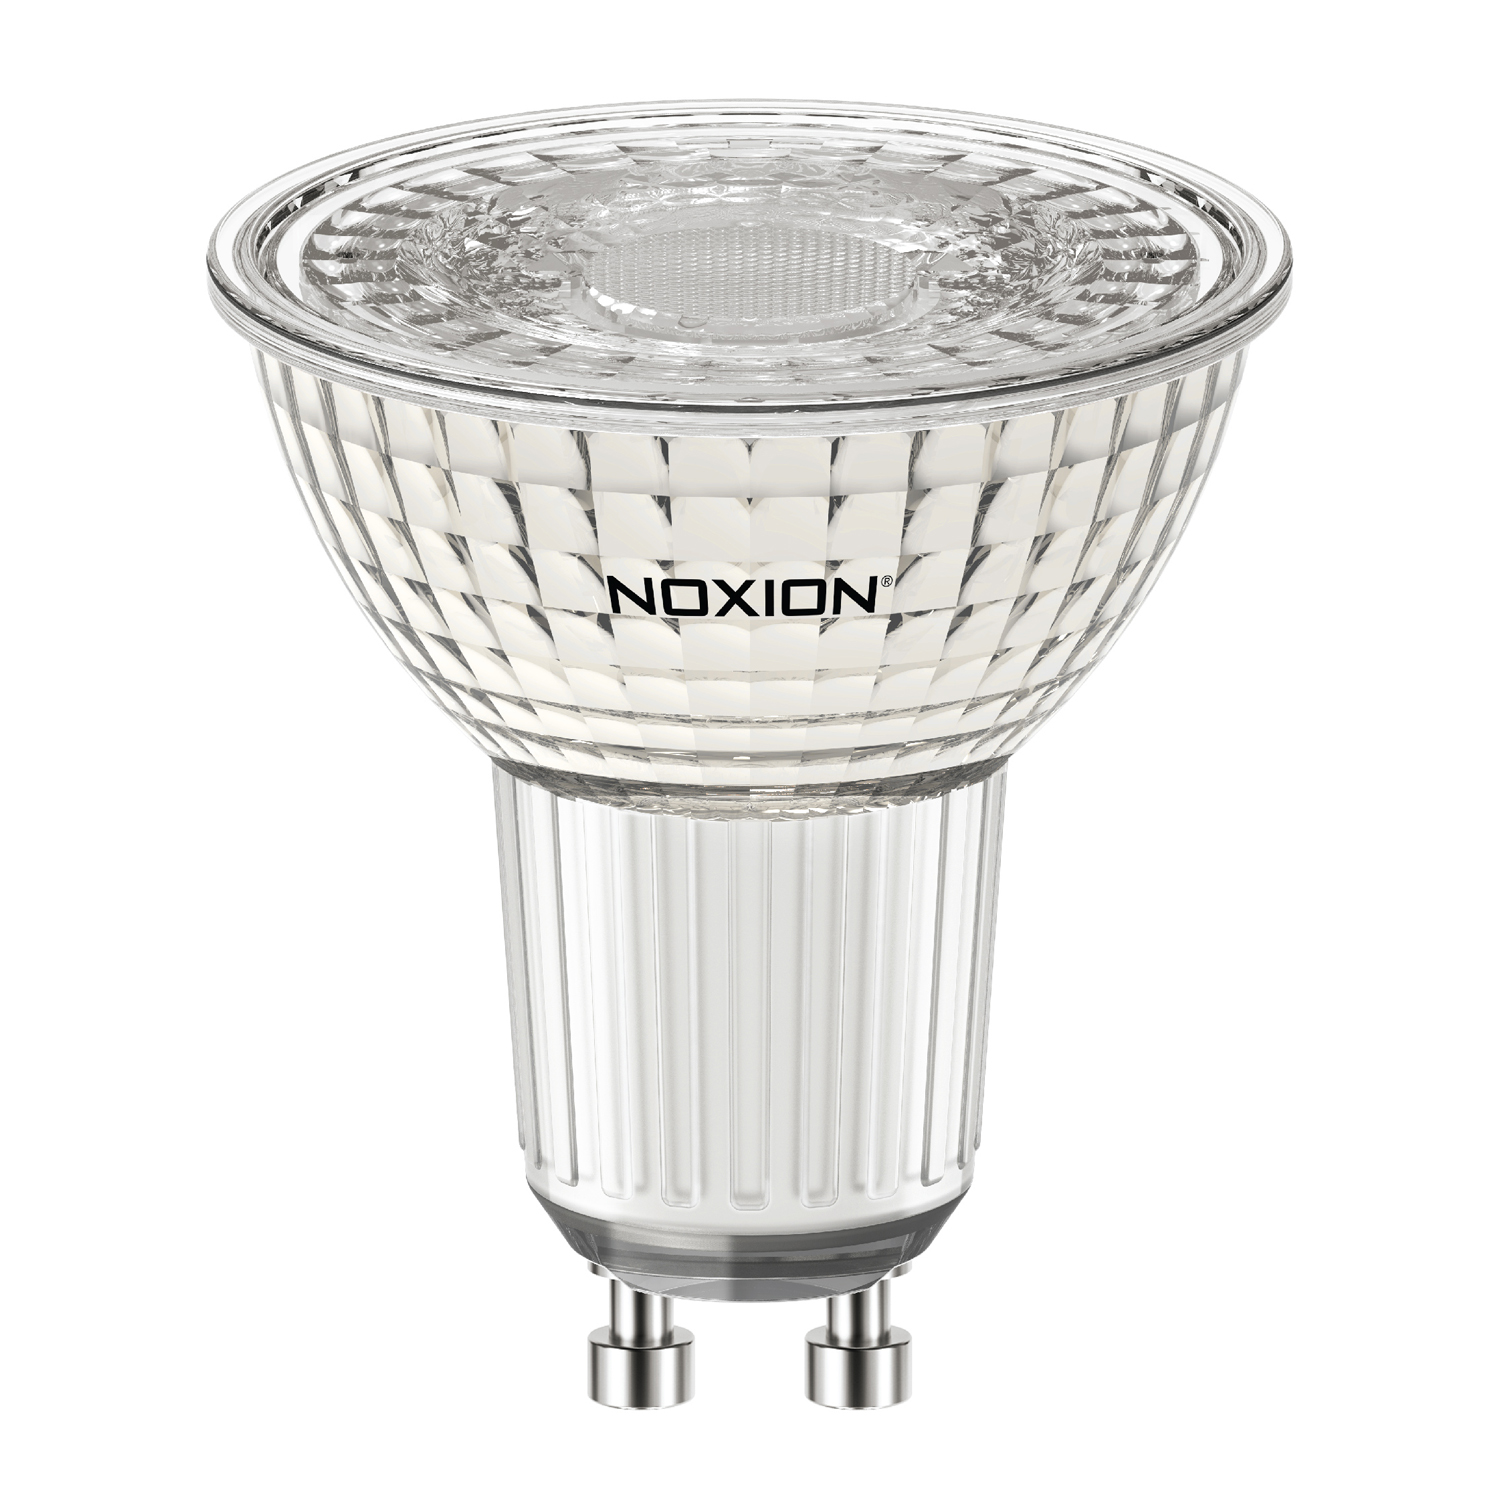 Noxion LEDspot PerfectColor GU10 5.5W 930 36D | Warm White - Dimmable - Replaces 50W